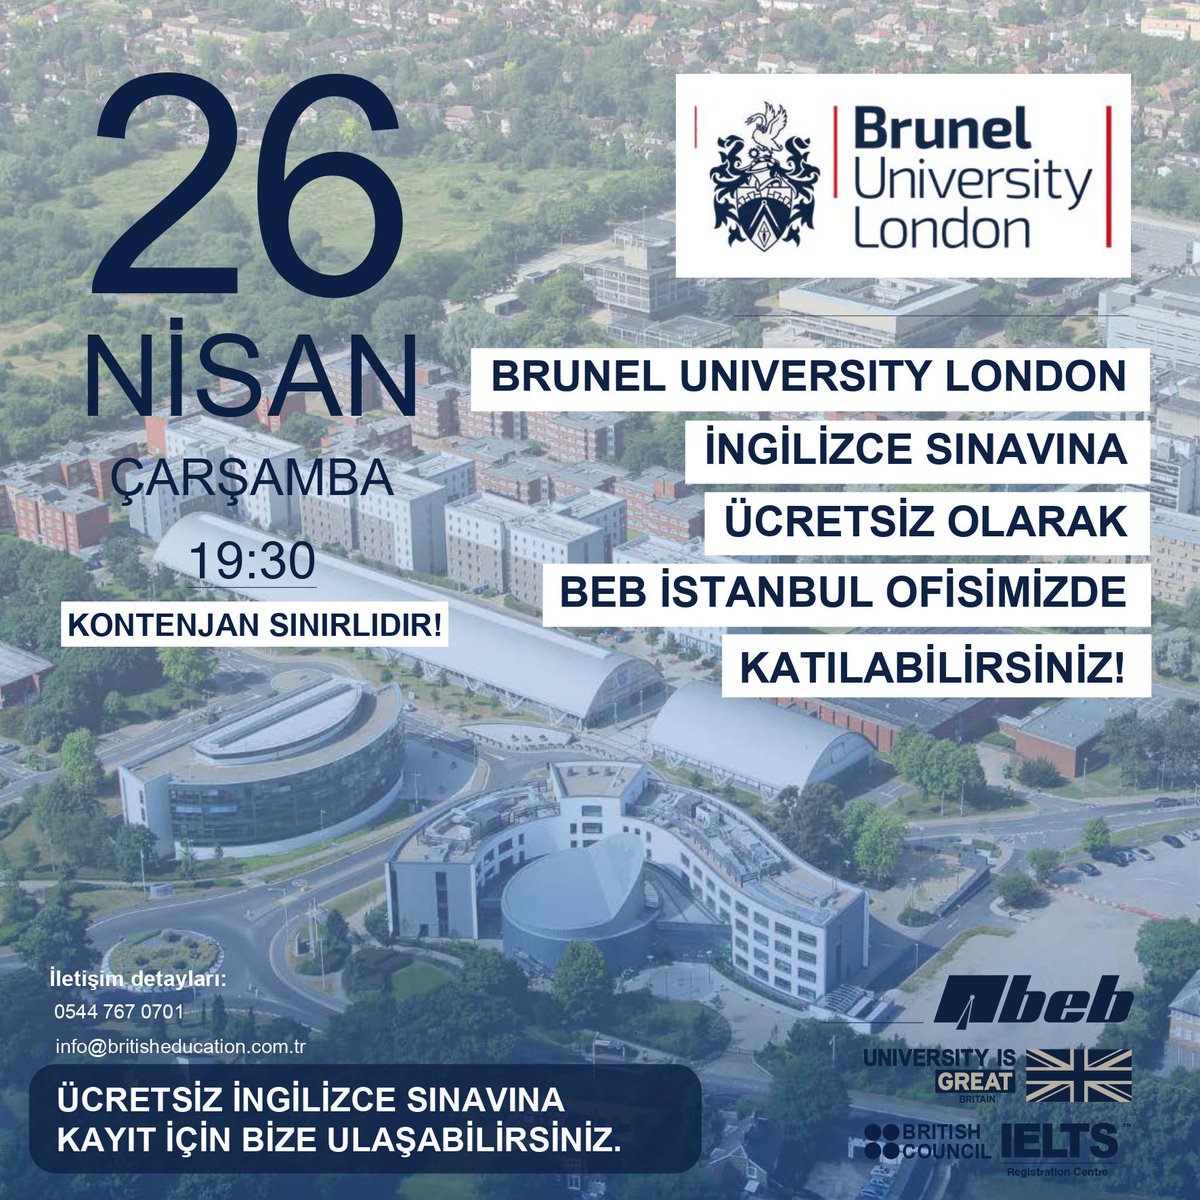 Brunel University London İngilizce Dil Sınavı ücretsiz olarak BEB İstanbul Ofisimizde gerçekleştirilecek! 🤩
📩 Kayıt için bize görseldeki bilgilerimizden veya DM üzerinden ulaşmanız gerekmektedir.
#beb #bruneluniversitylondon #brunel #bruneluniversity #londra #ingilizcesınavı